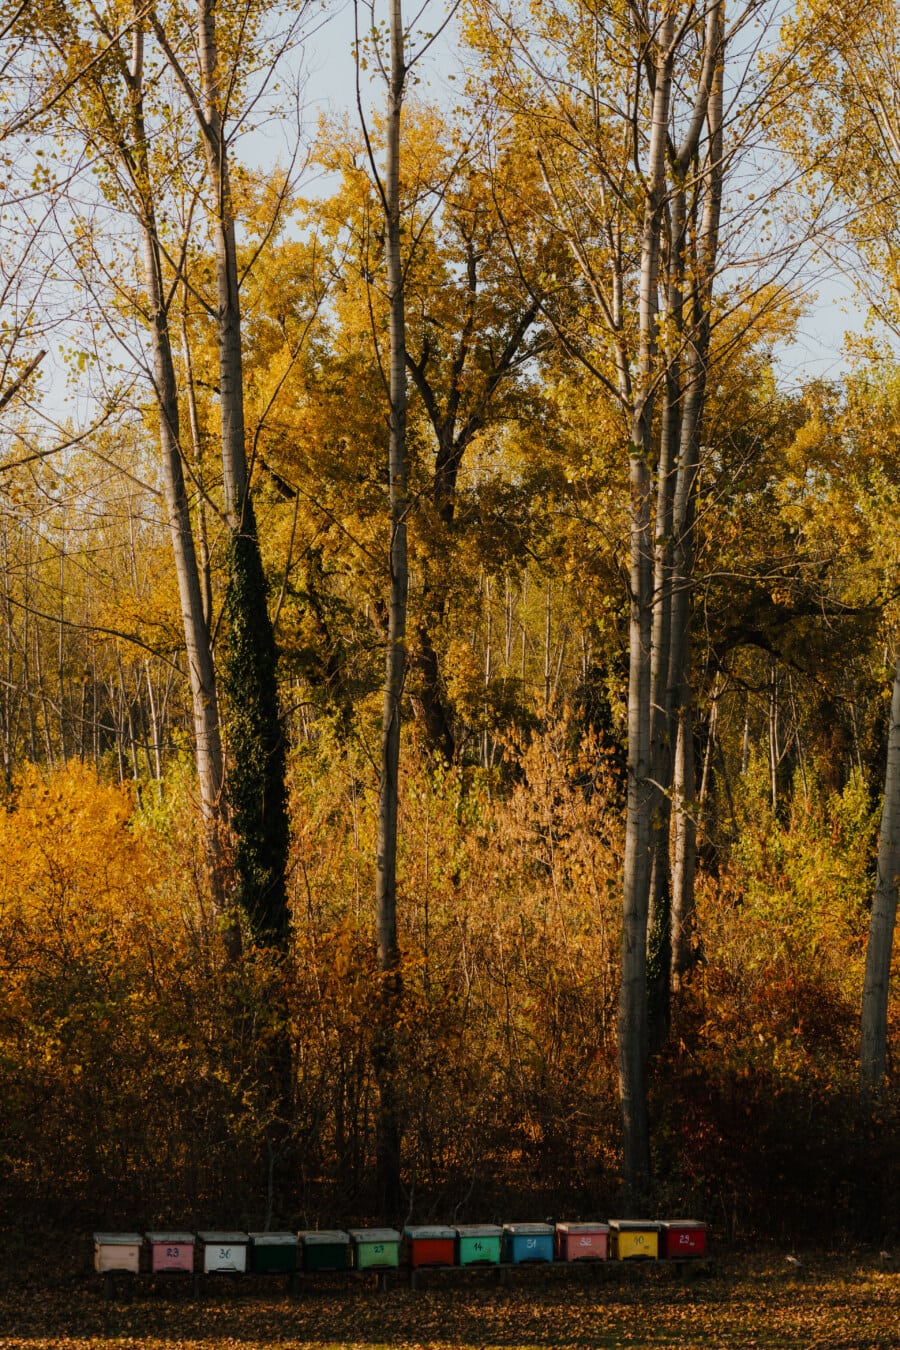 les, podzimní sezóna, žluto hnědá, barevné, včelí úl, příroda, podzim, dřevo, Topol, krajina